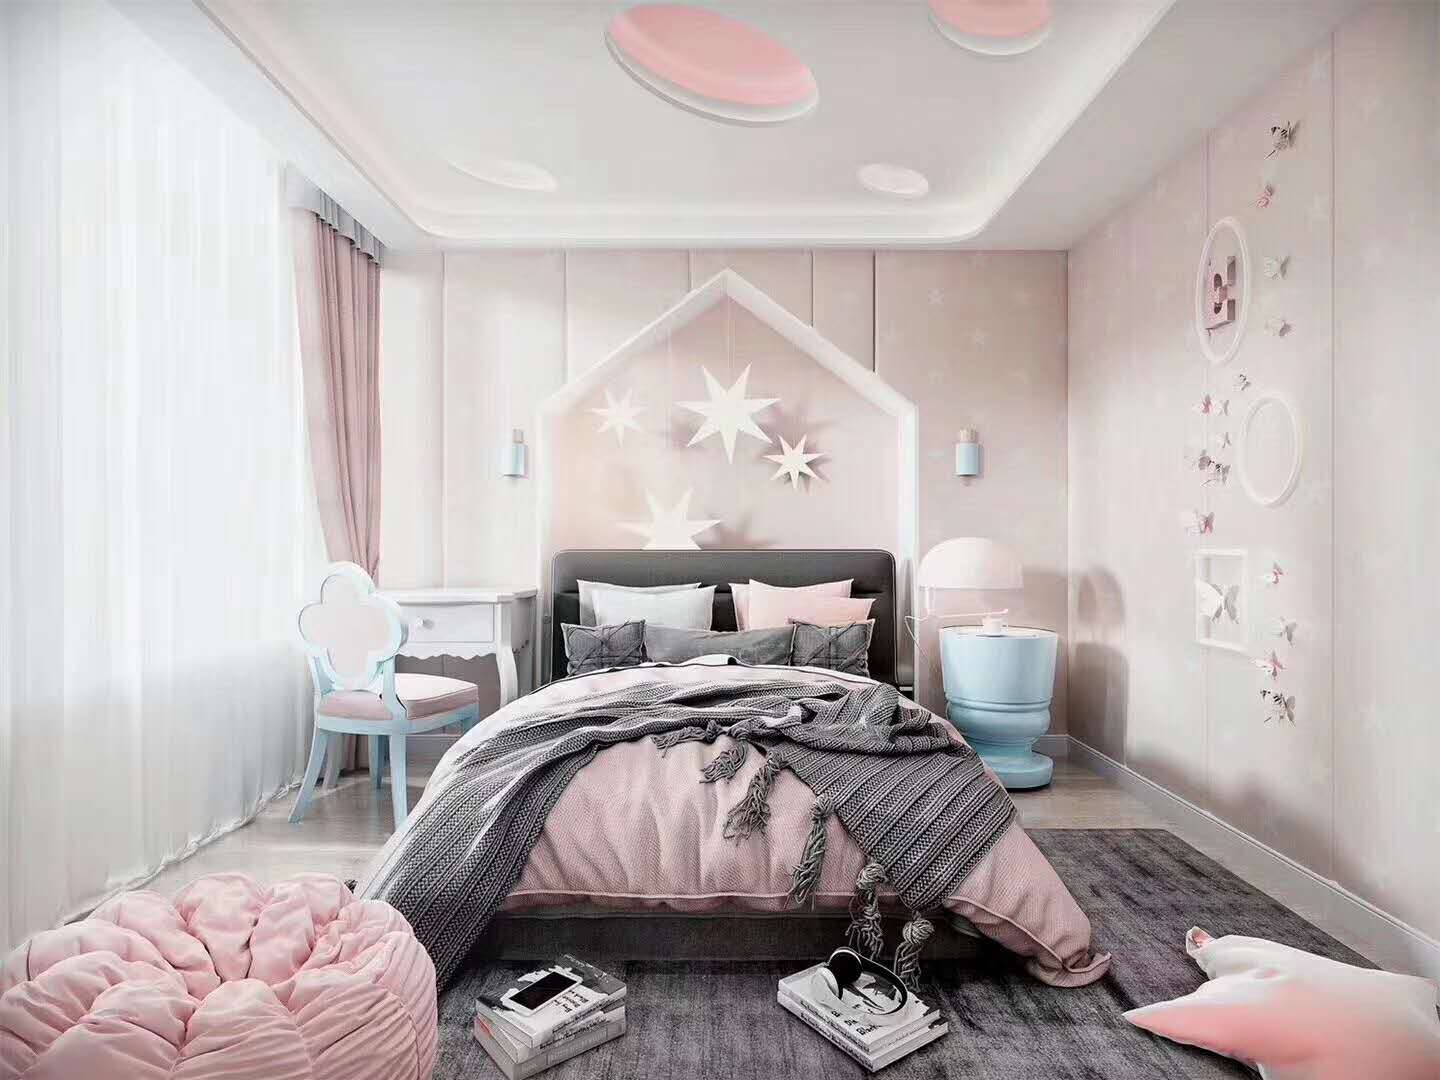 【卧室装修】卧室照片墙的设计布置技巧 卧室照片墙怎么设计布置